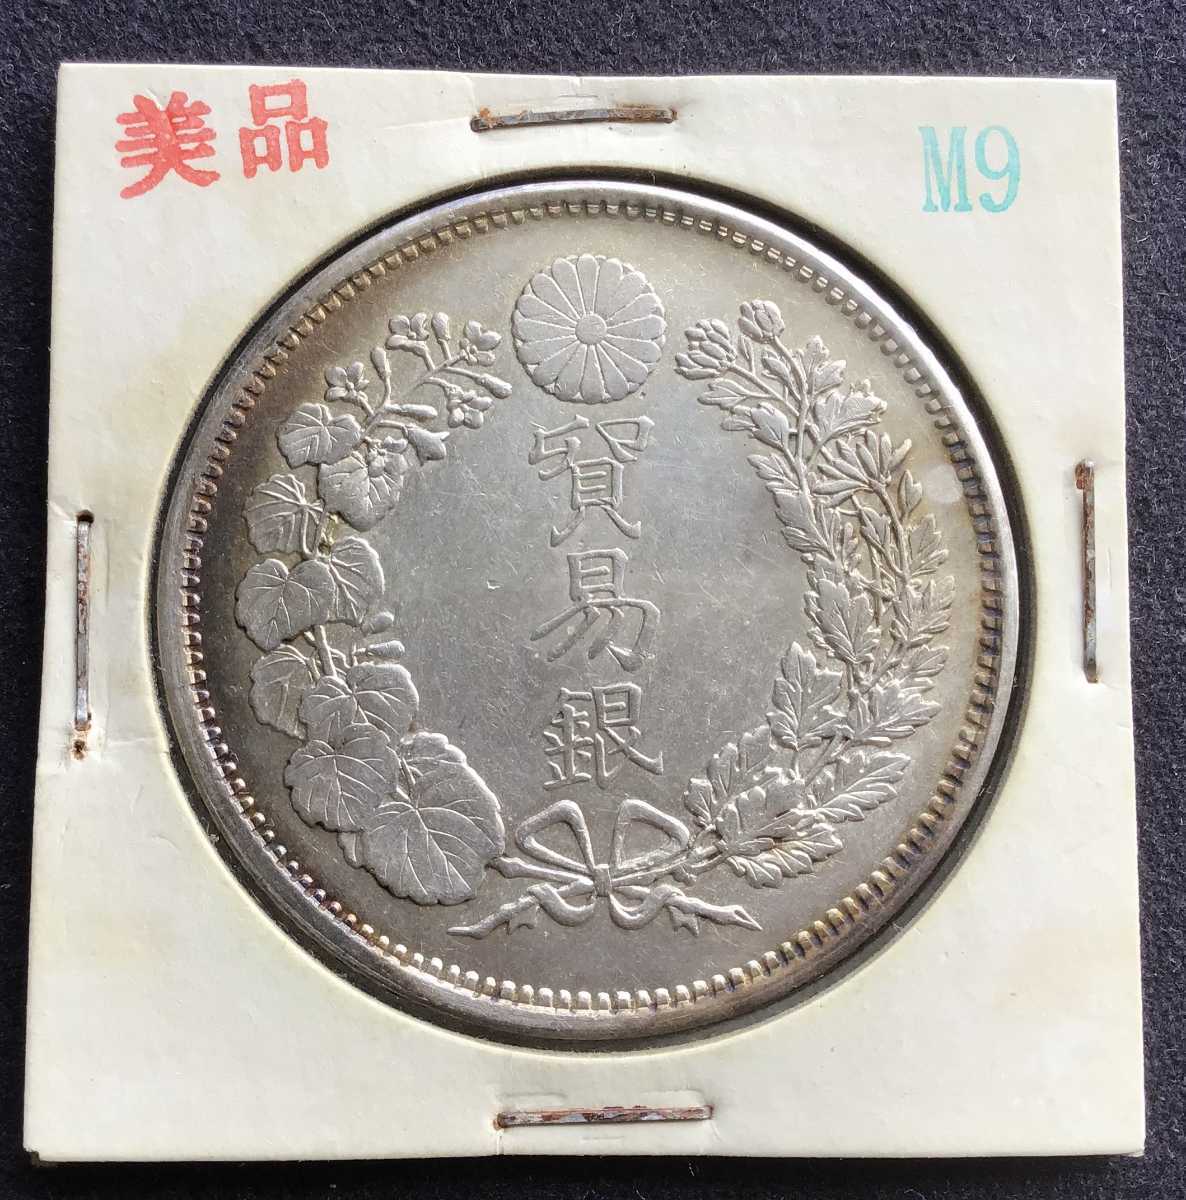 丸銀 貿易銀 明治9年 2.6mm 1円銀貨 古銭 一円銀貨 コレクション 旧